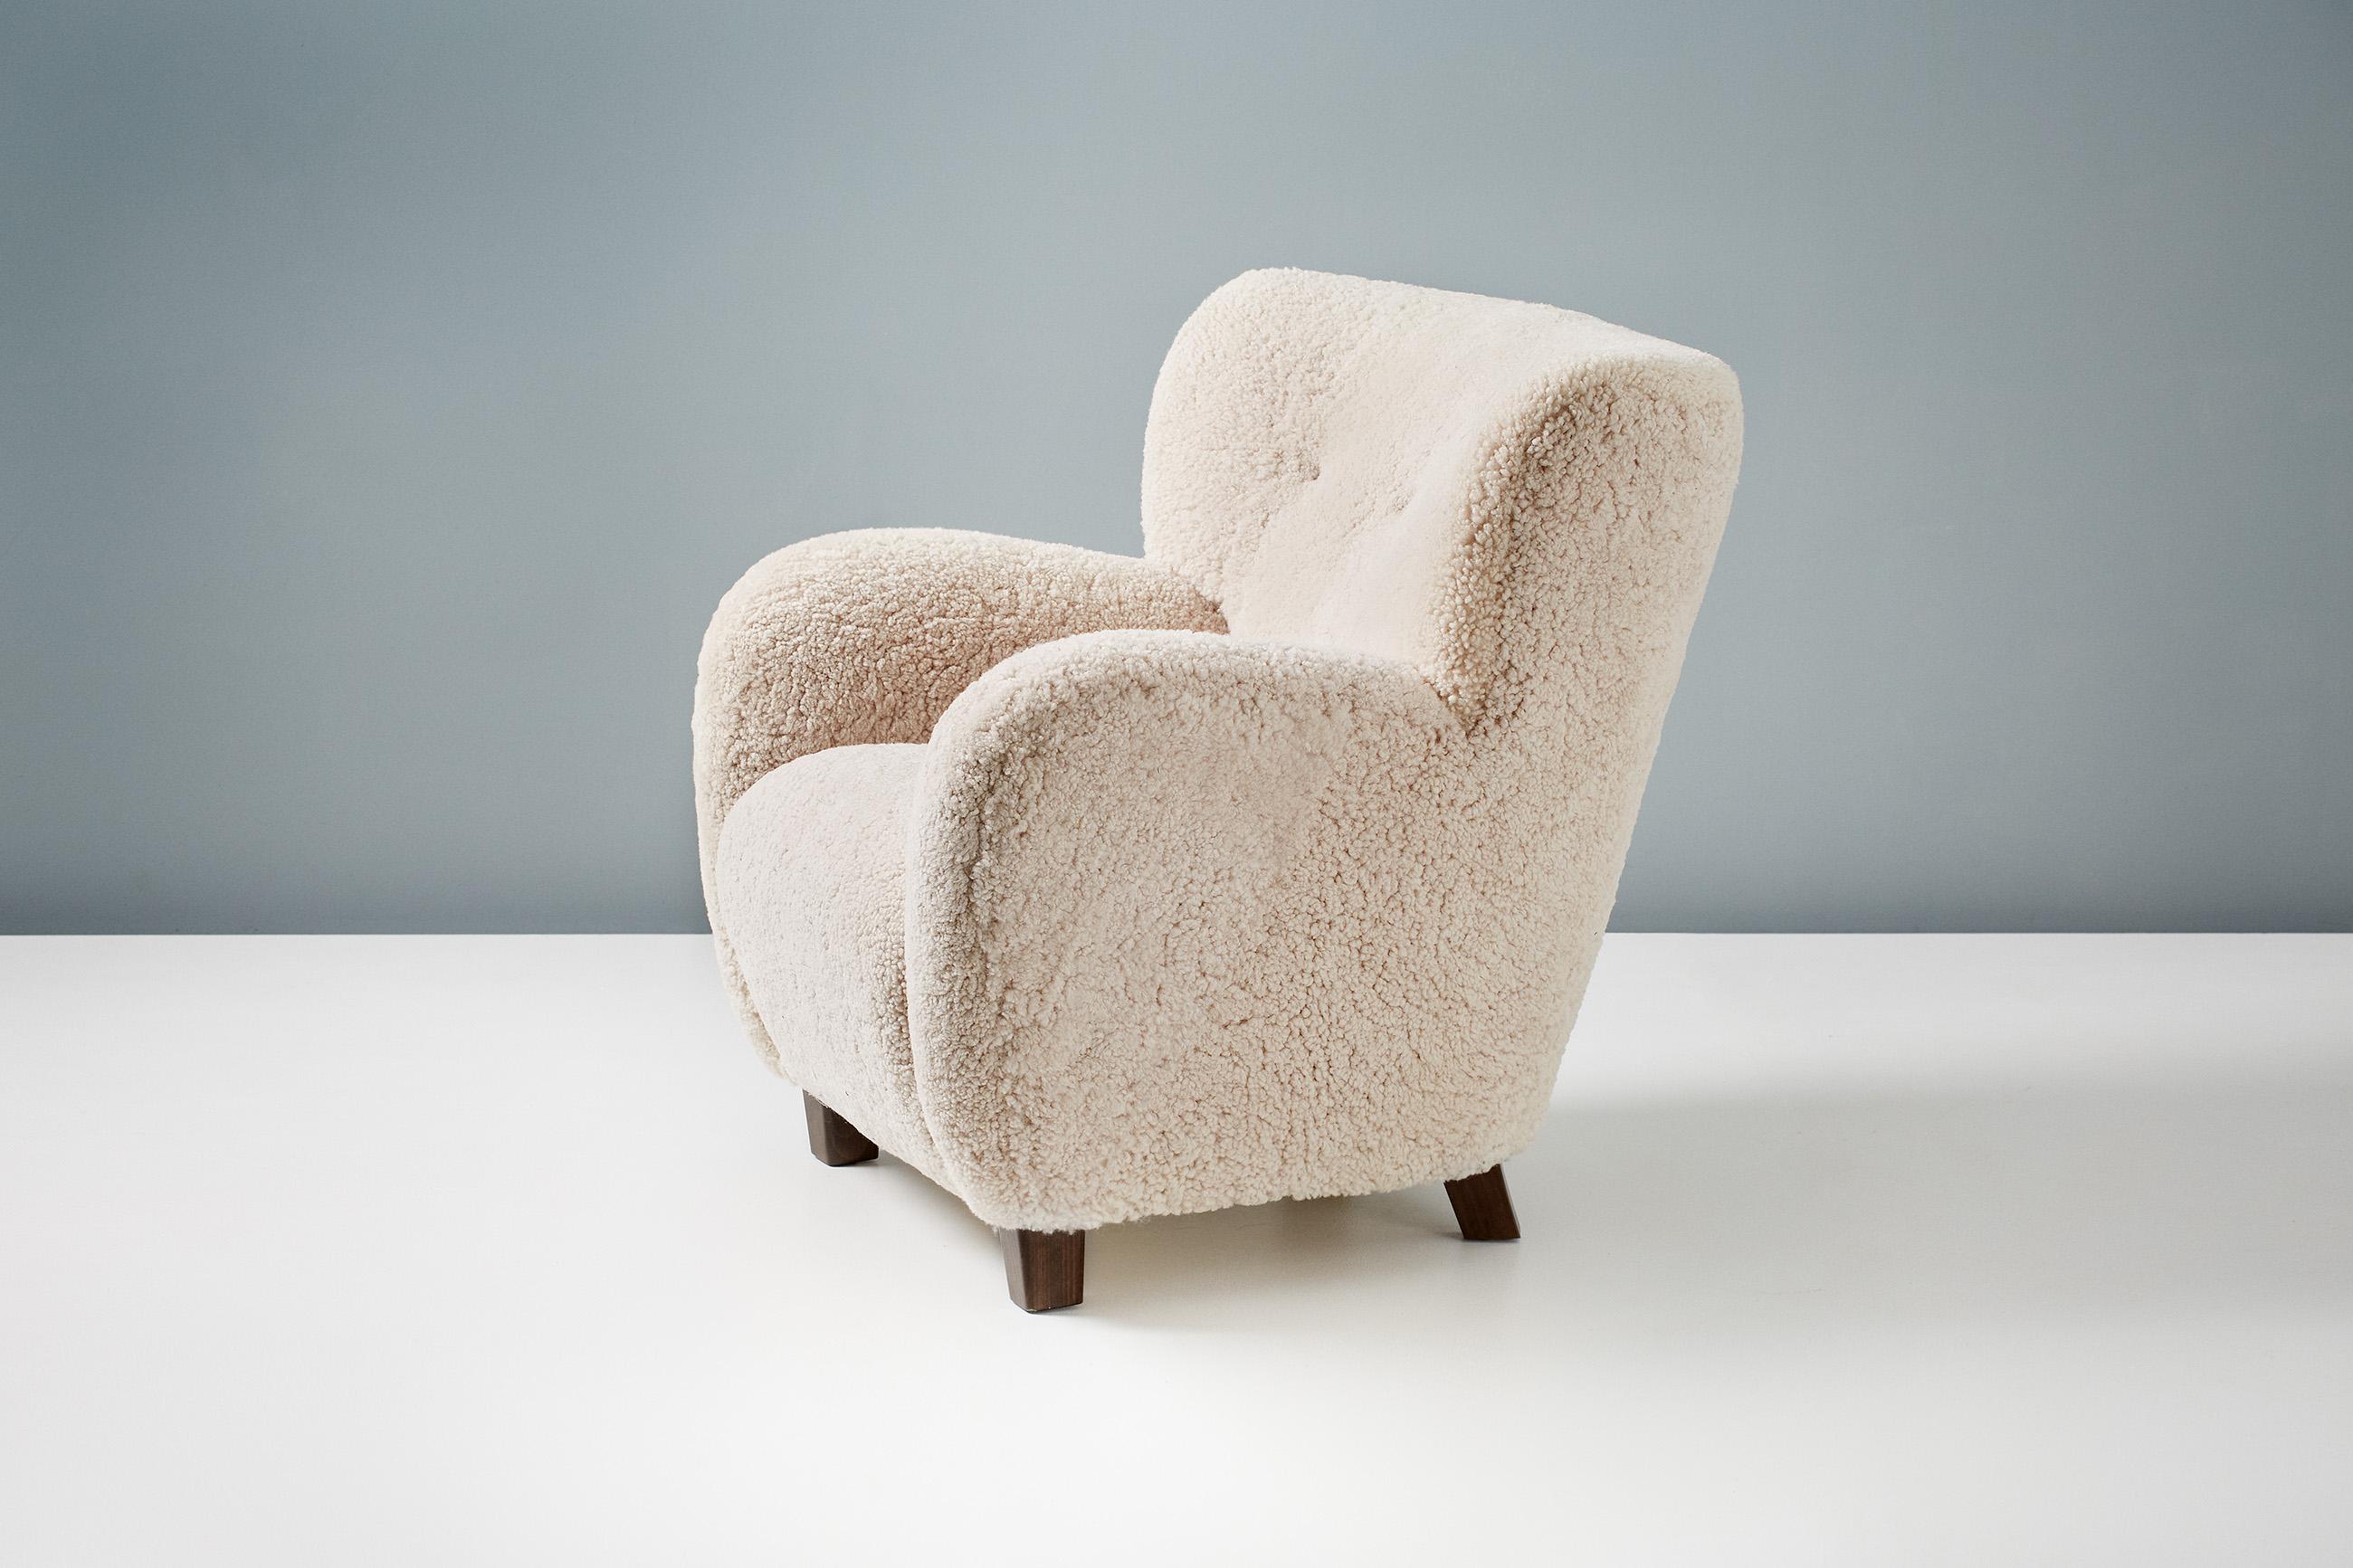 Dagmar Design - Chaise longue Karu

Ces chaises longues haut de gamme sont fabriquées à la main sur commande dans nos ateliers en Angleterre. Les pieds de la chaise sont disponibles en chêne ou en hêtre dans une gamme de finitions. Les cadres sont